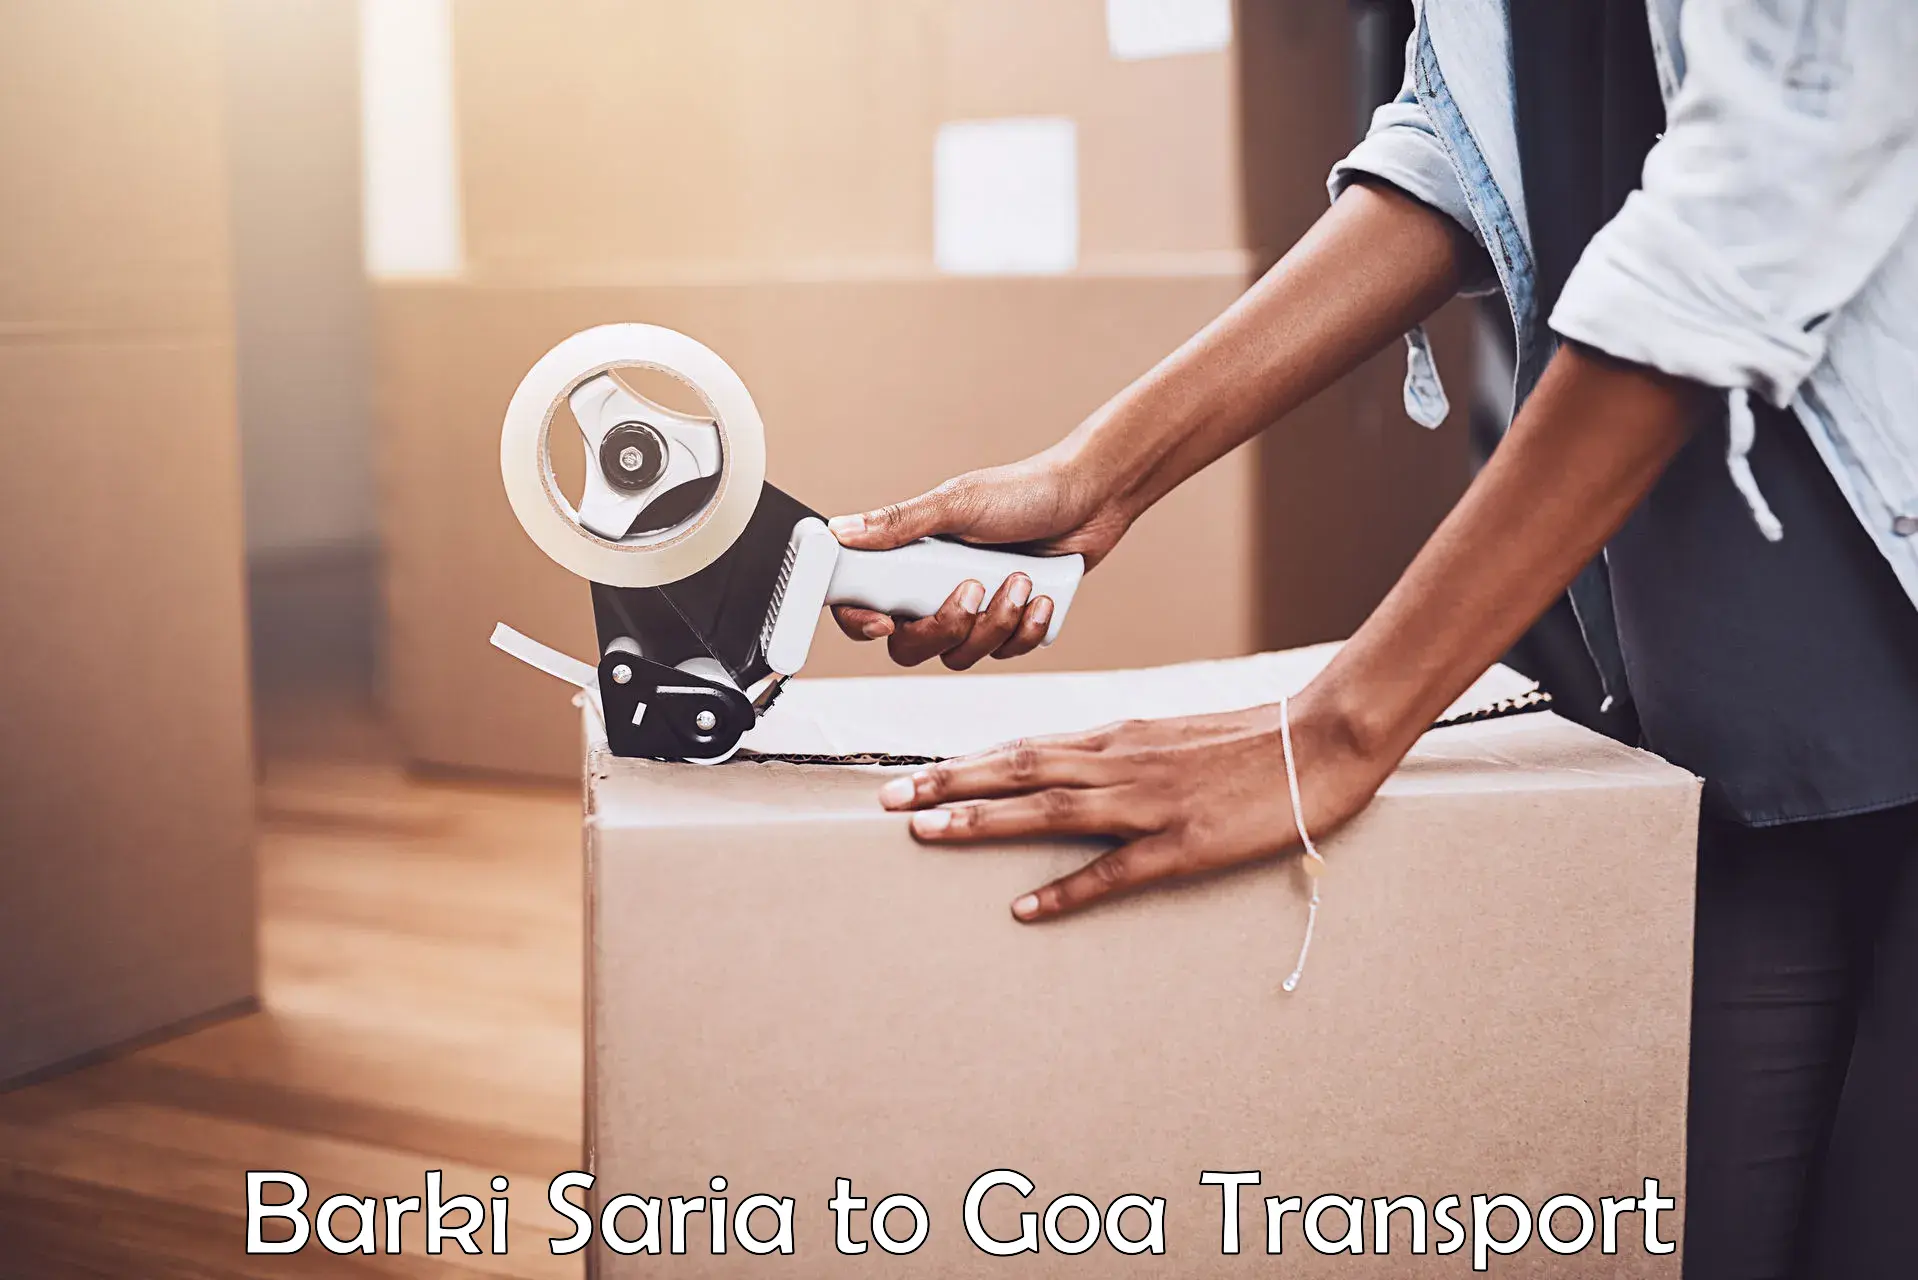 Lorry transport service Barki Saria to Goa